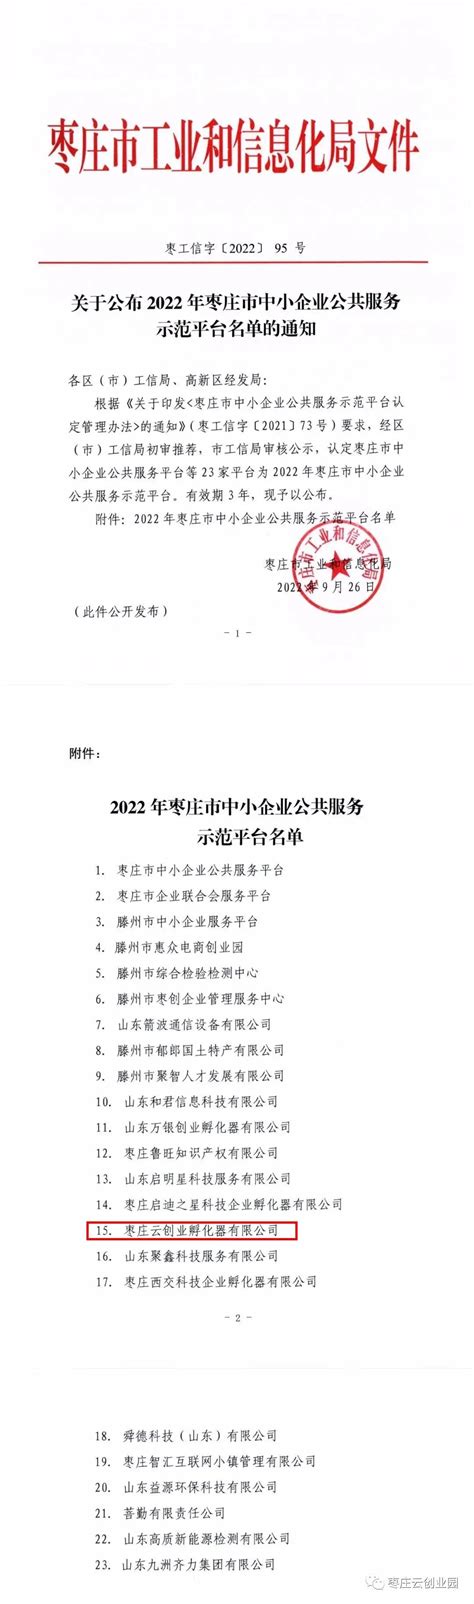 我园区被认定为2022年枣庄市中小企业公共服务示范平台_枣庄云创业园